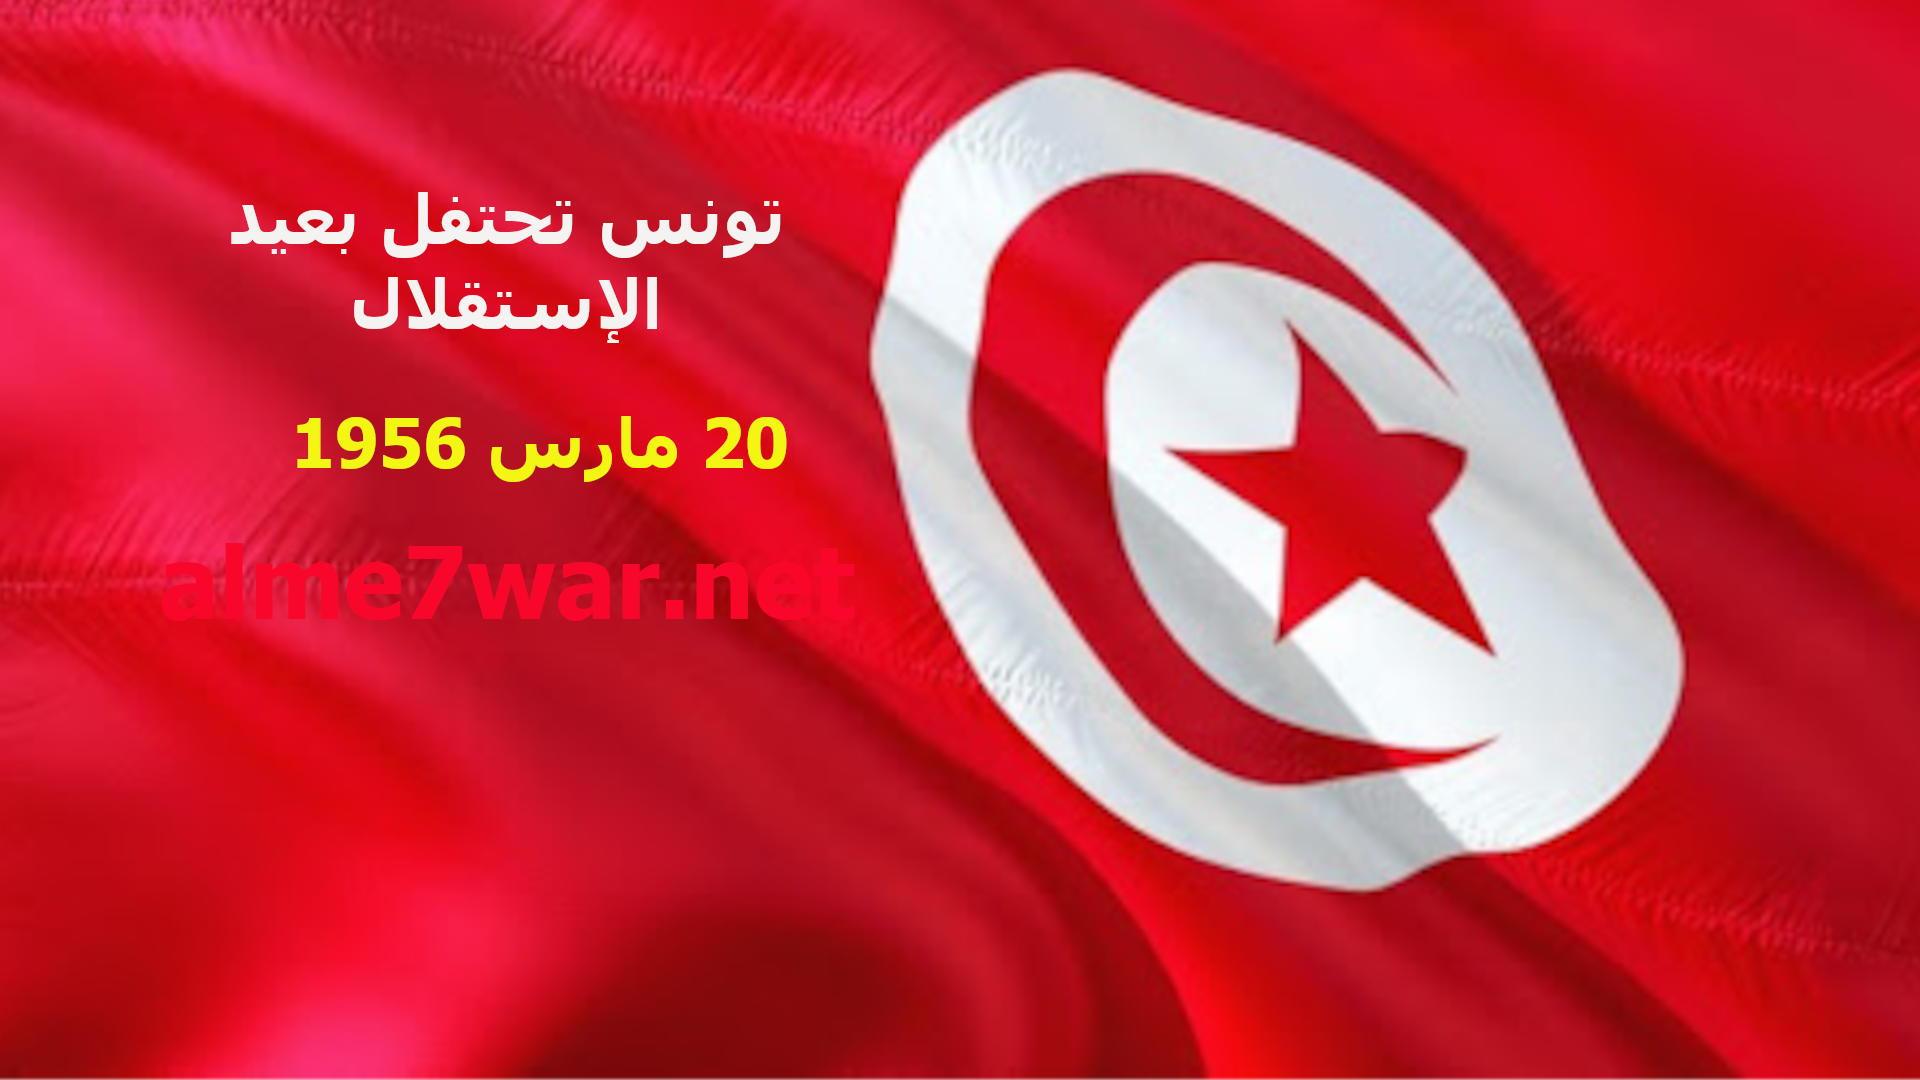 تونس تحتفل اليوم بذكرى الإستقلال